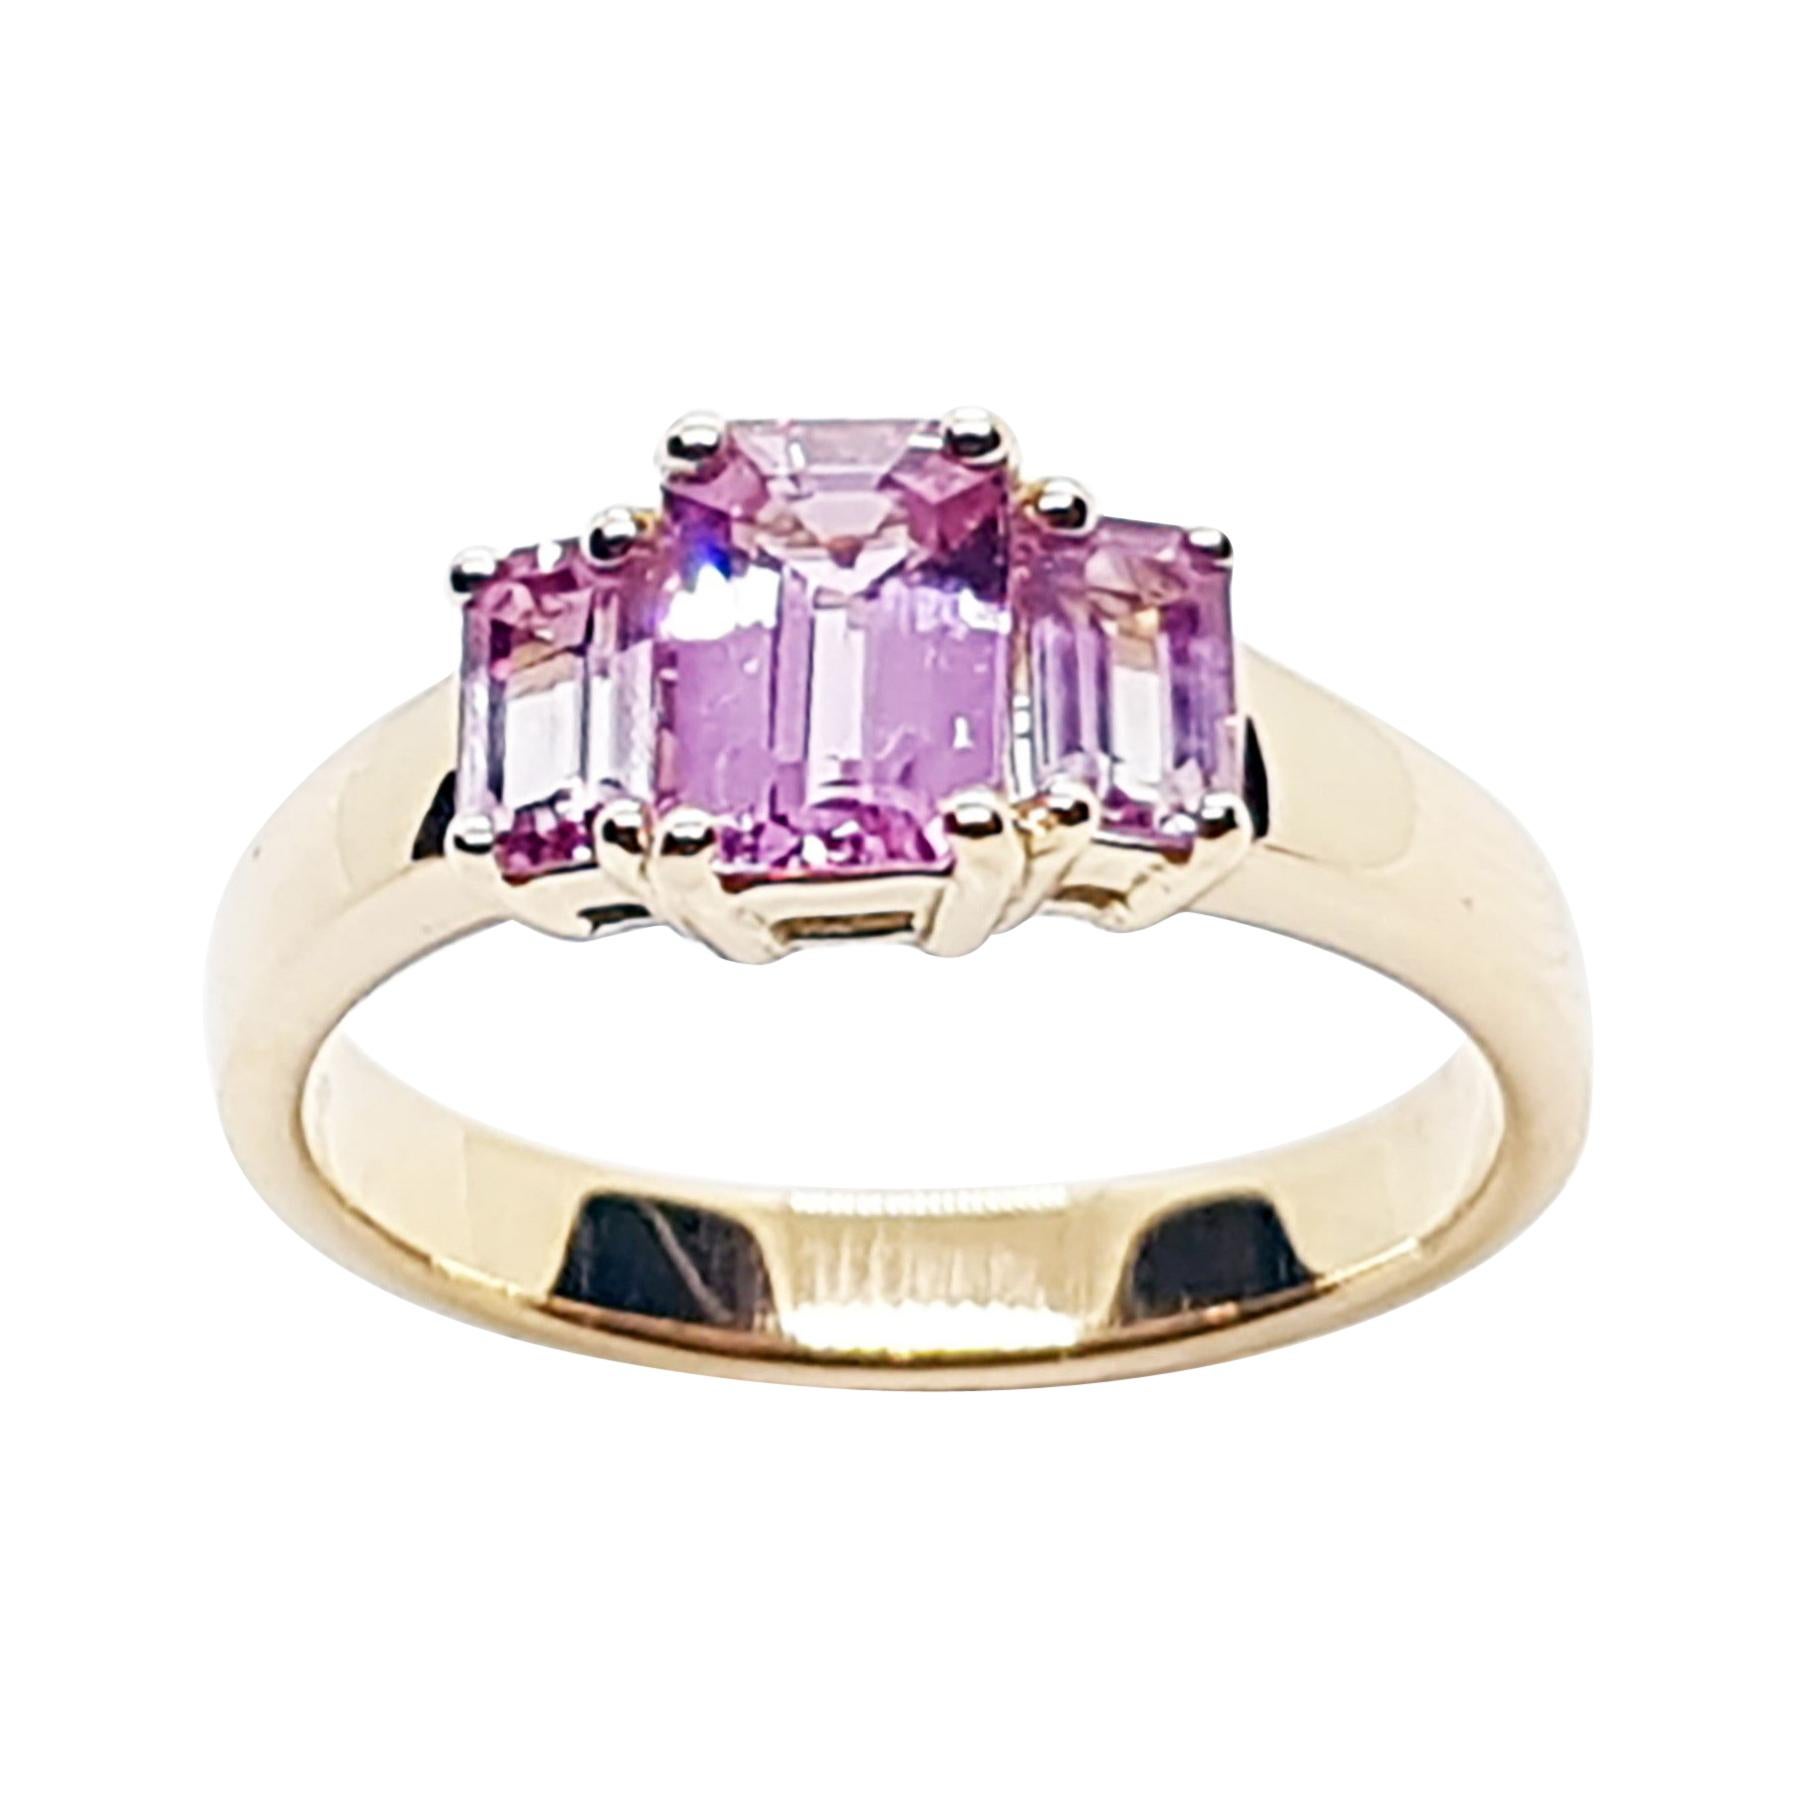 Pink Sapphire Ring set in 18 Karat Rose Gold Settings